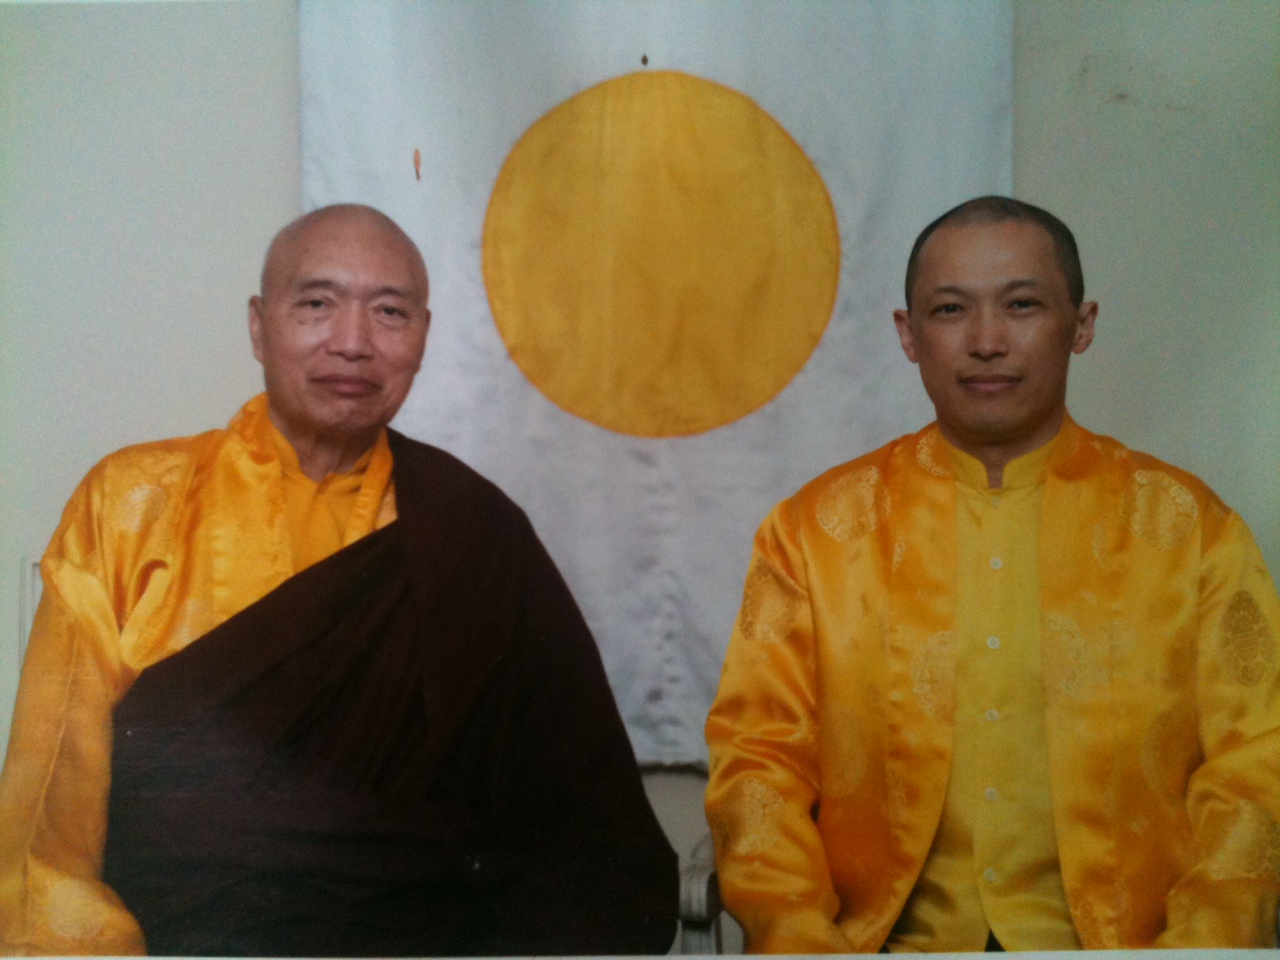 Kết quả hình ảnh cho sakyong mipham and terton namkha rinpoche